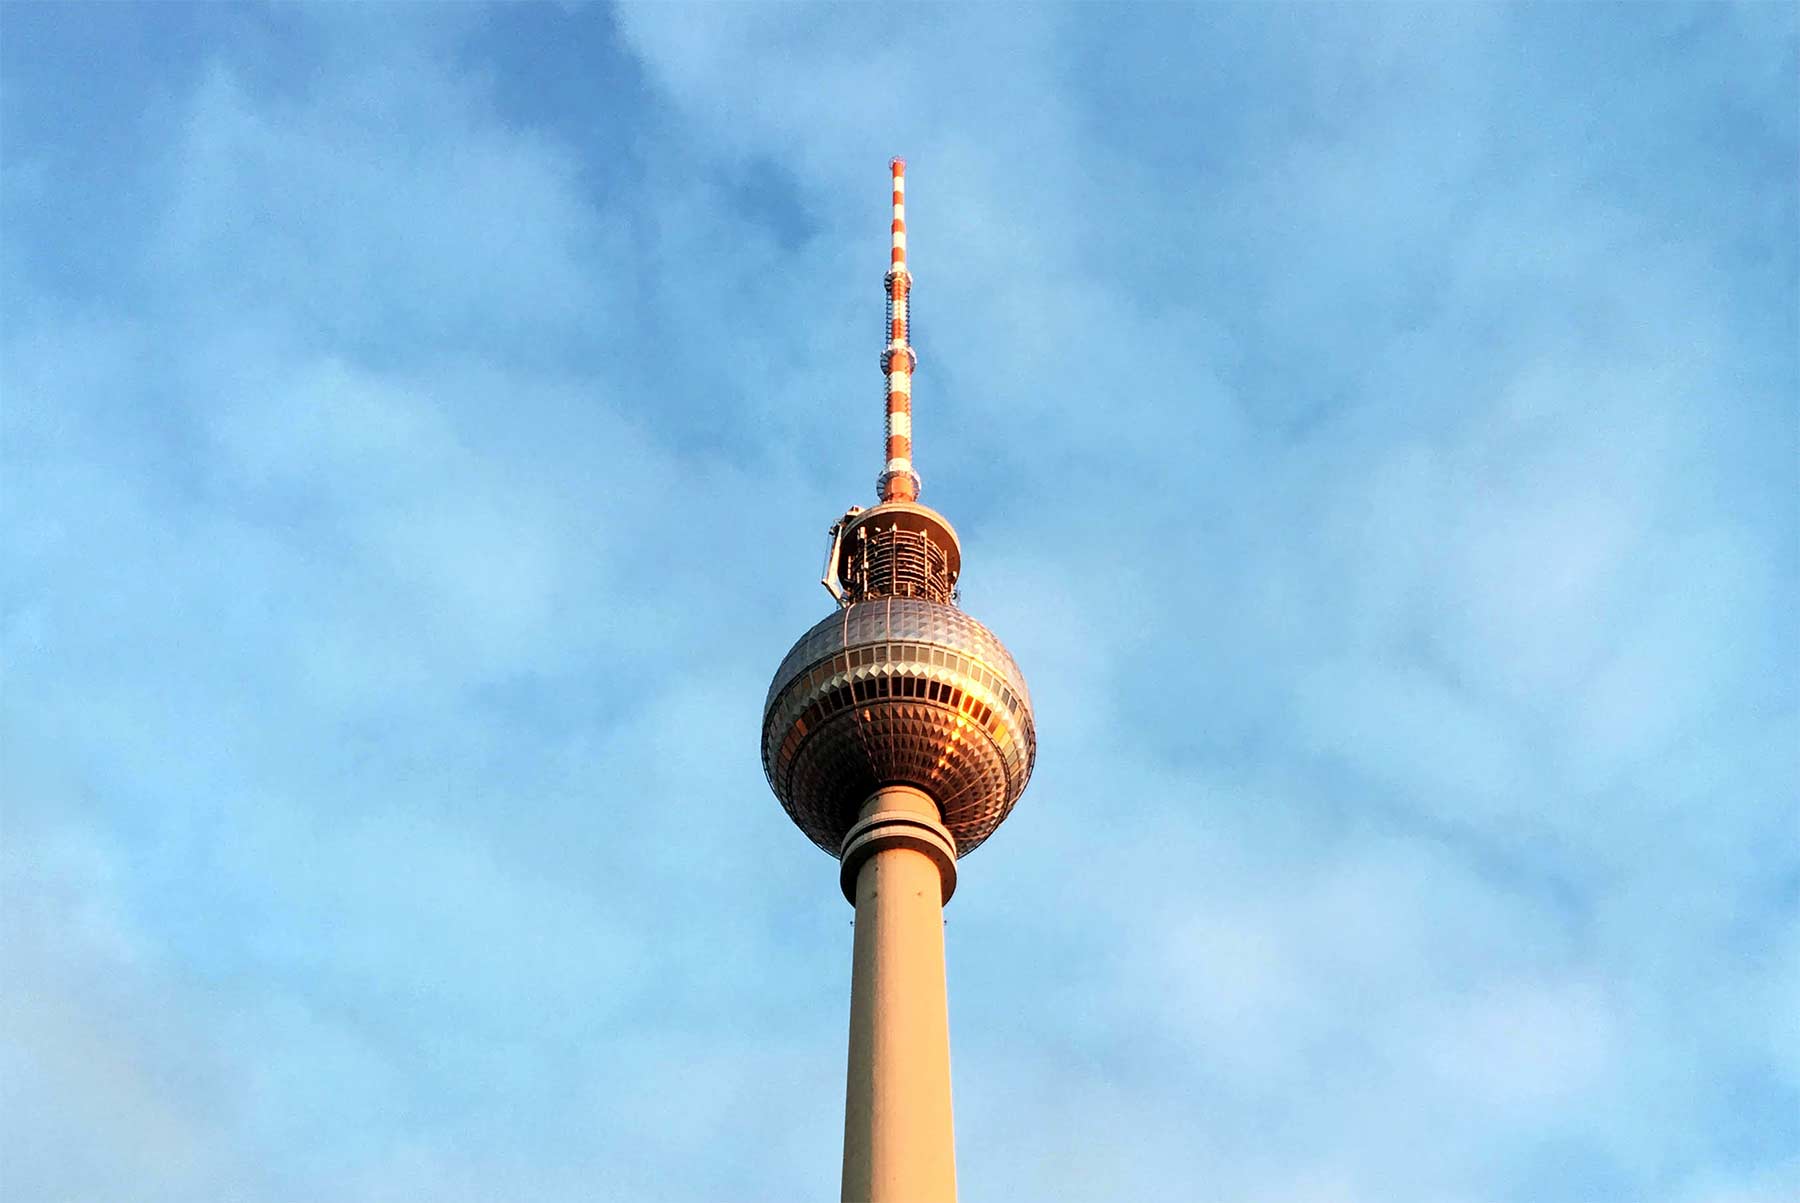 "Und, hast du dich schon in Berlin eingelebt?" BERLIN-fernsehturm 